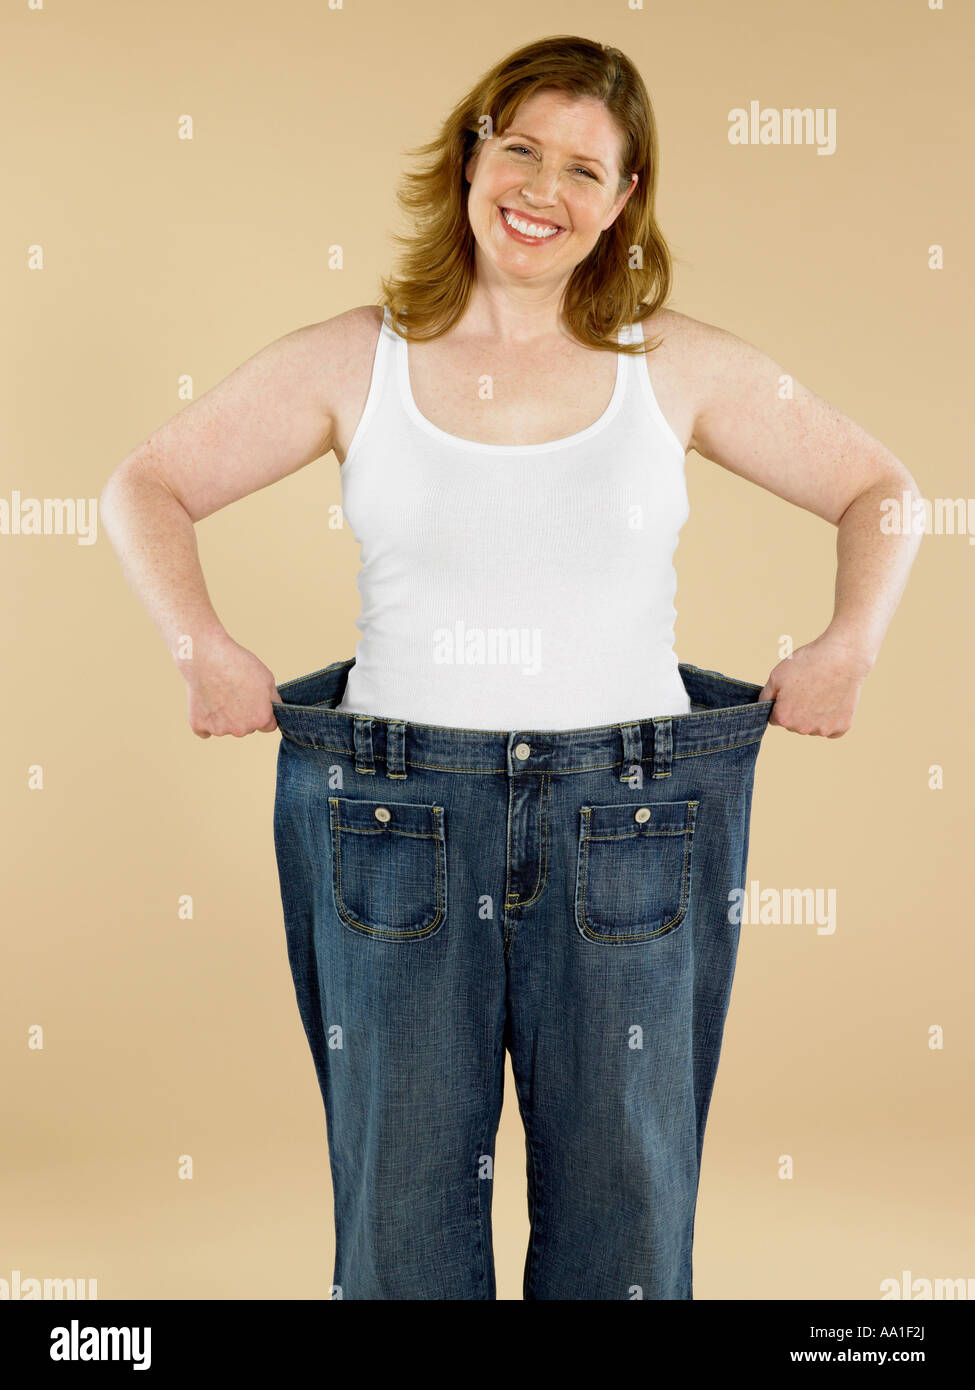 Femme avec jeans lâche Photo Stock - Alamy